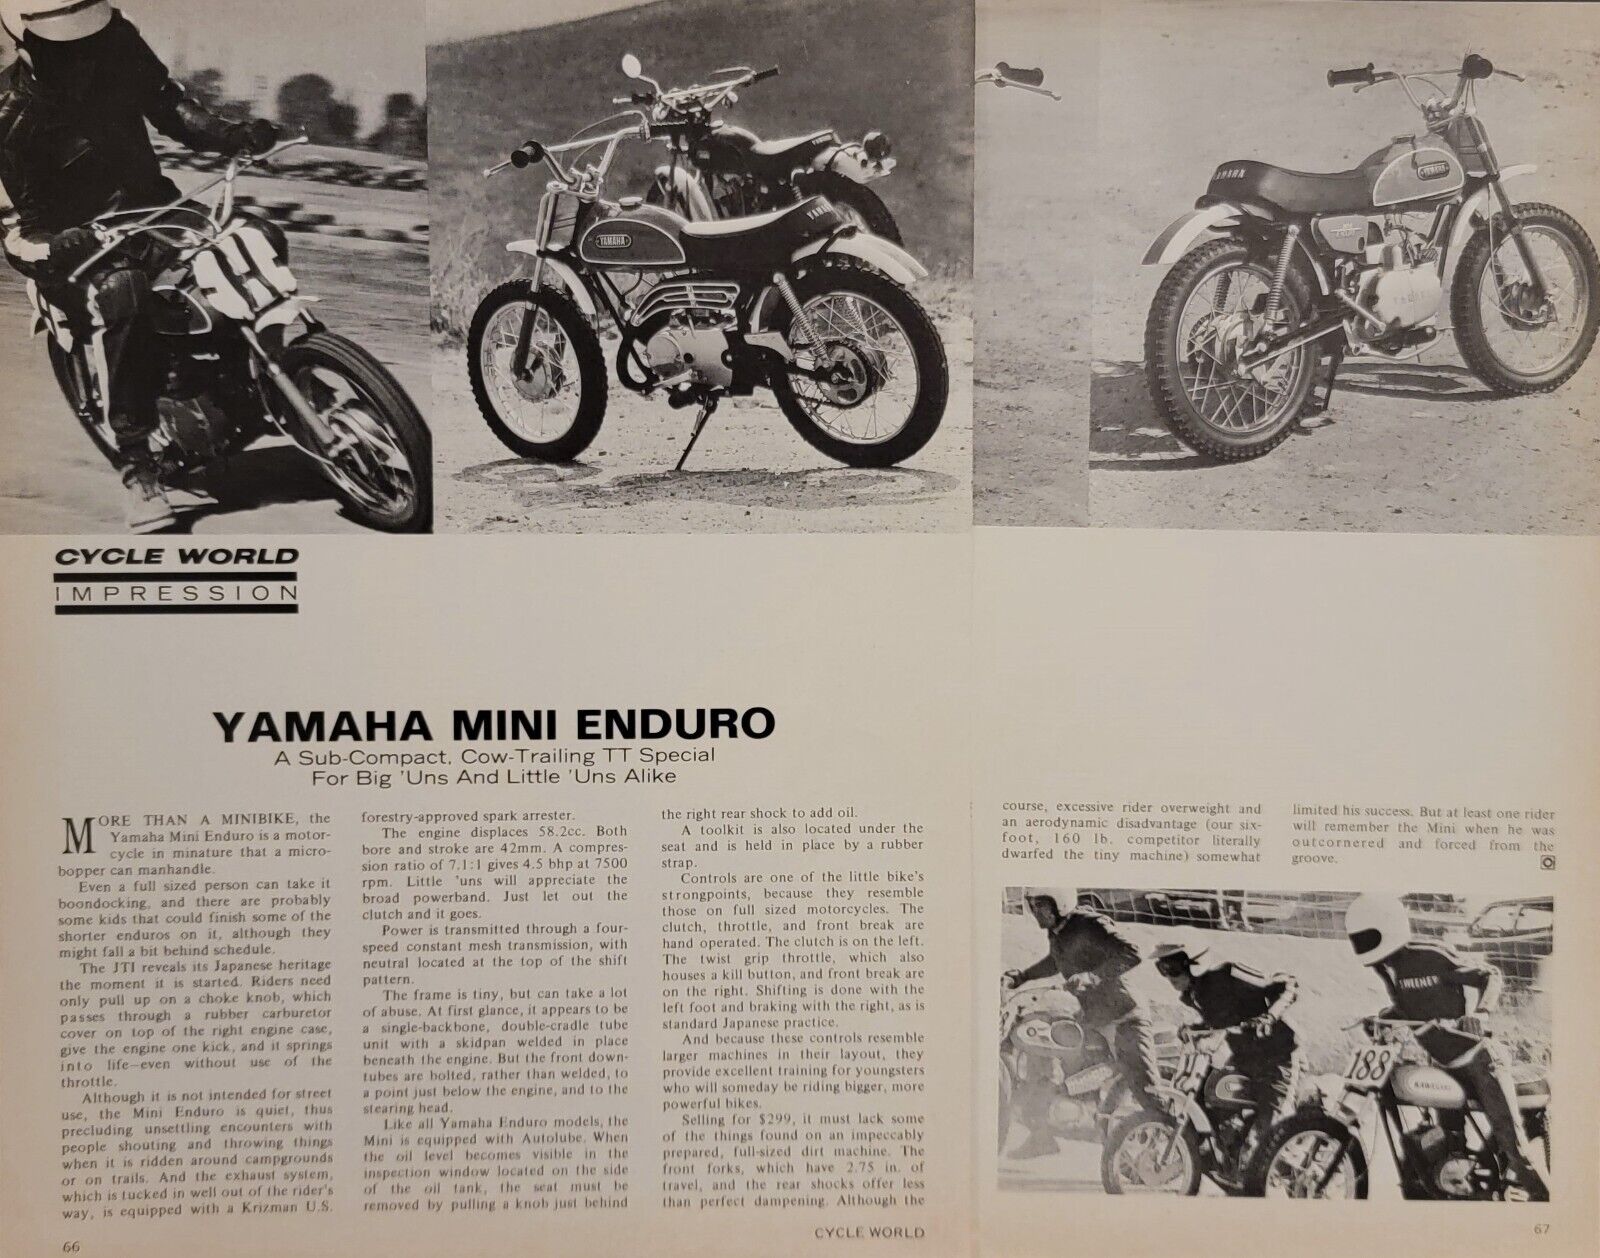 1971 Yamaha 60 Mini Enduro 2pg Motorcycle Test Article